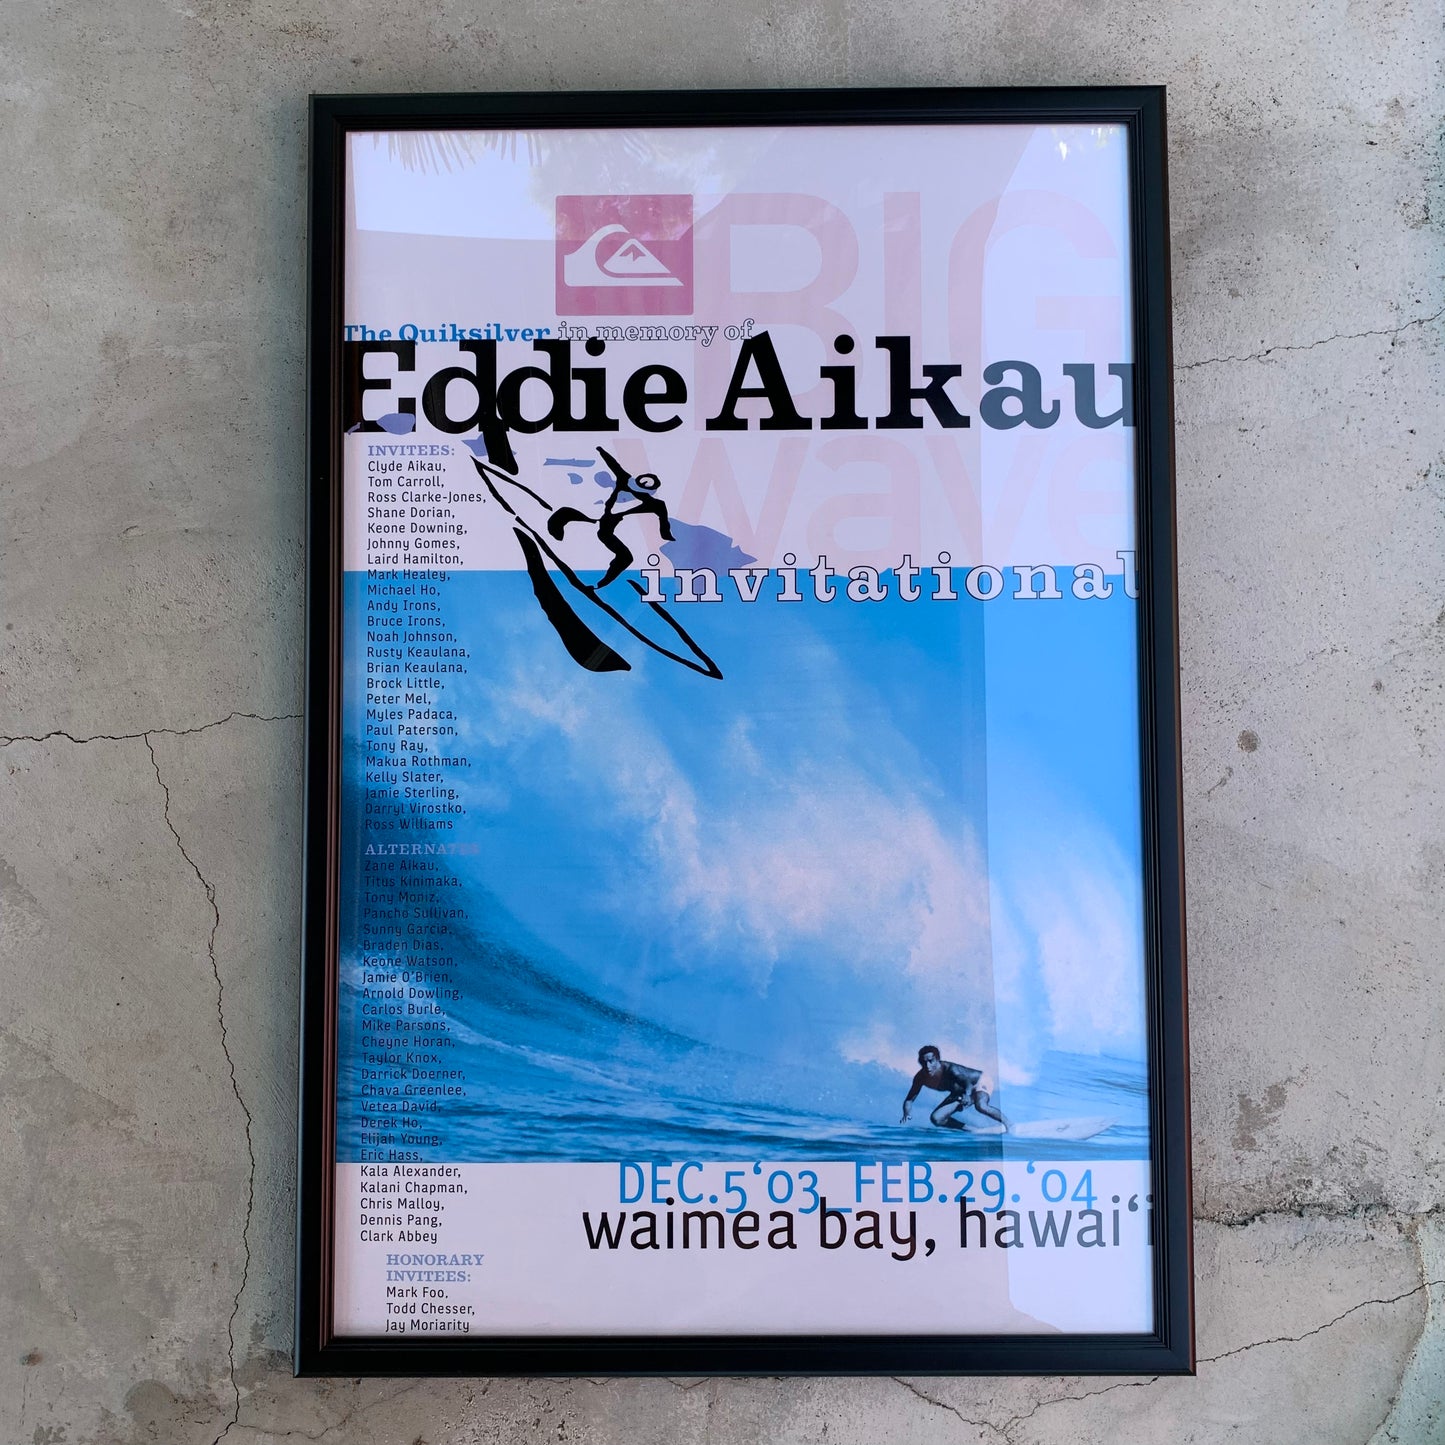 エディ・アイカウ　アートカルチャー　36×24インチ (91.5cm×61cm)　額縁約96.2×66cm　The Quiksilver in memory of Eddie Aikau　2003-04